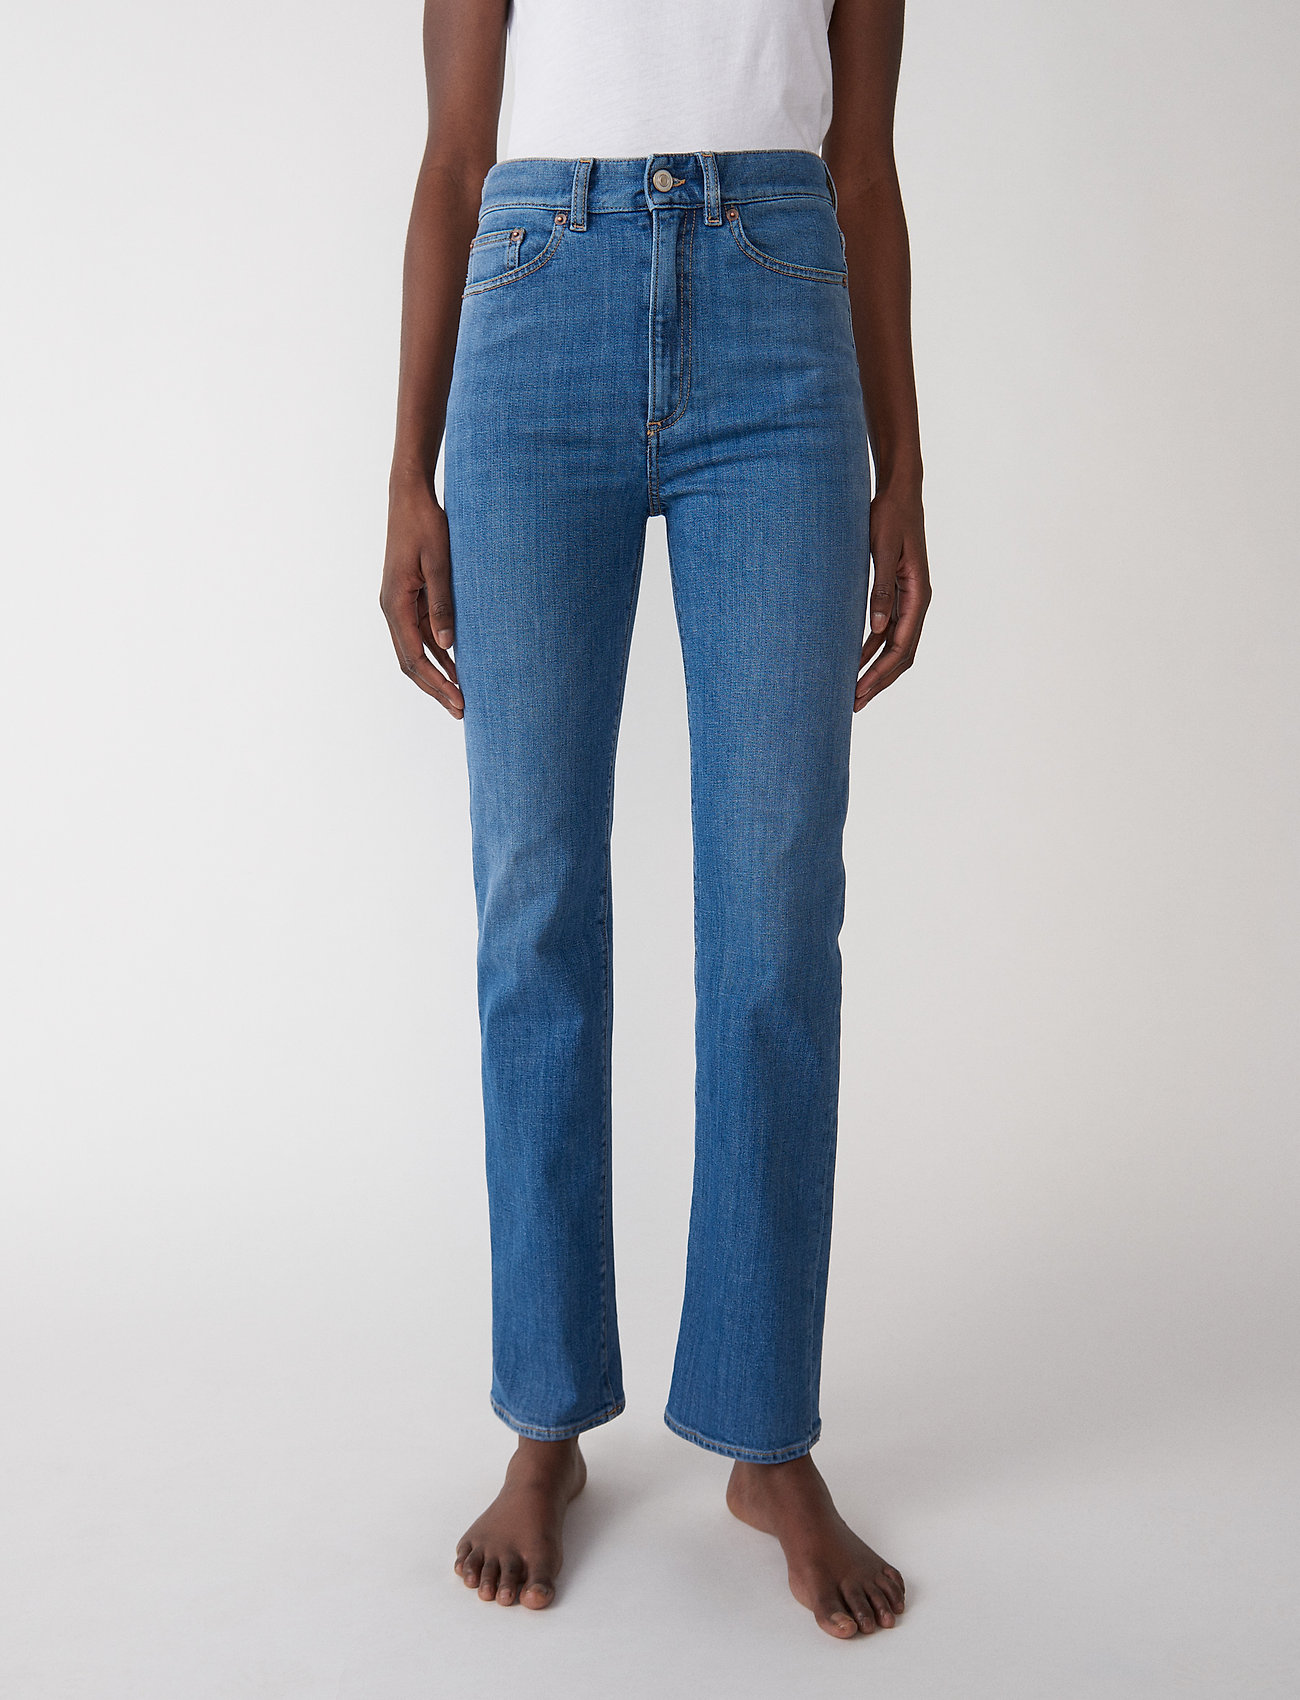 Jeanerica - EW004 - raka jeans - mid vintage - 0